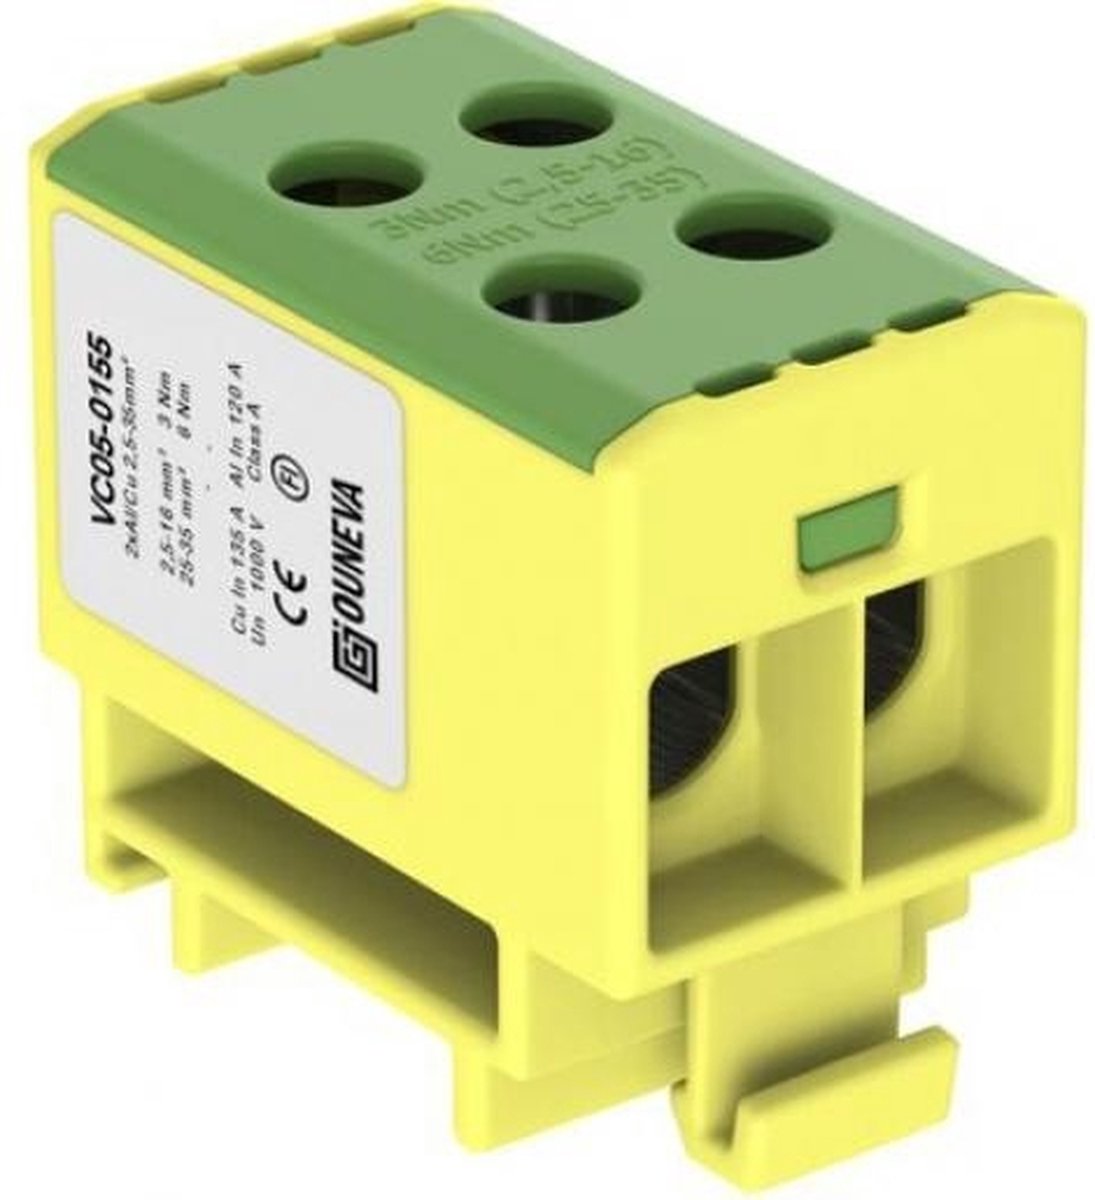 Ouneva aansluitklem 2-voudig geel/groen 2,5-35 mm² (O-VC05-0155)